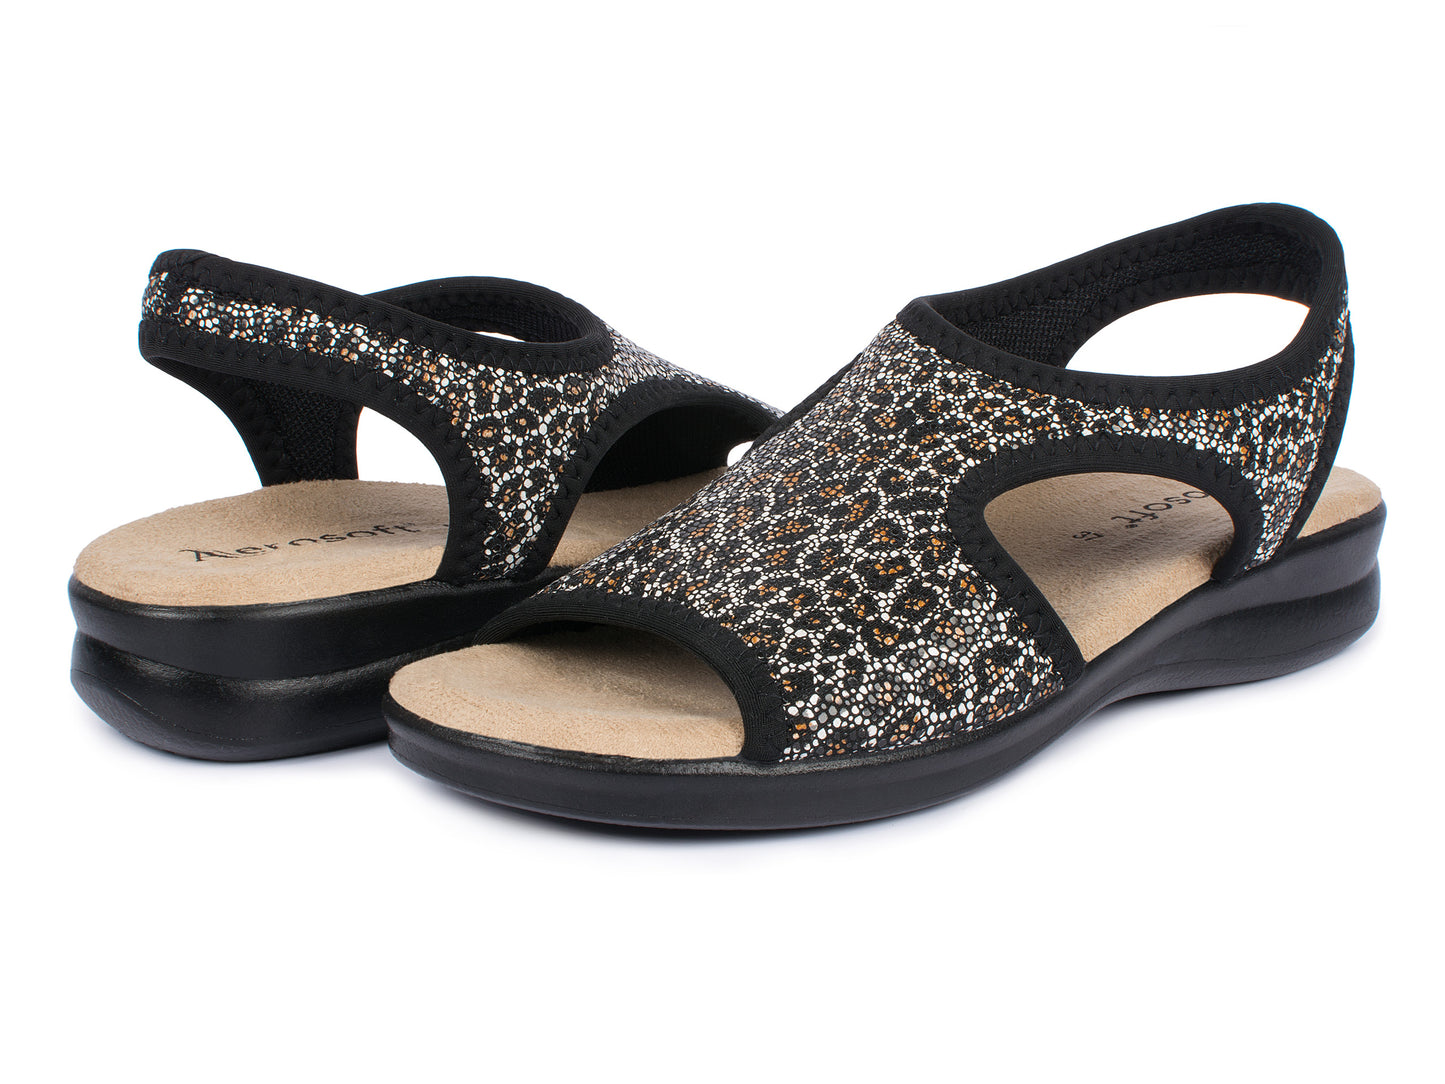 Damen Stretch Sandalette Modell Stretch 05 von Aerosoft in der Farbe Leopard schwarz als Schuh-Paar gezeigt